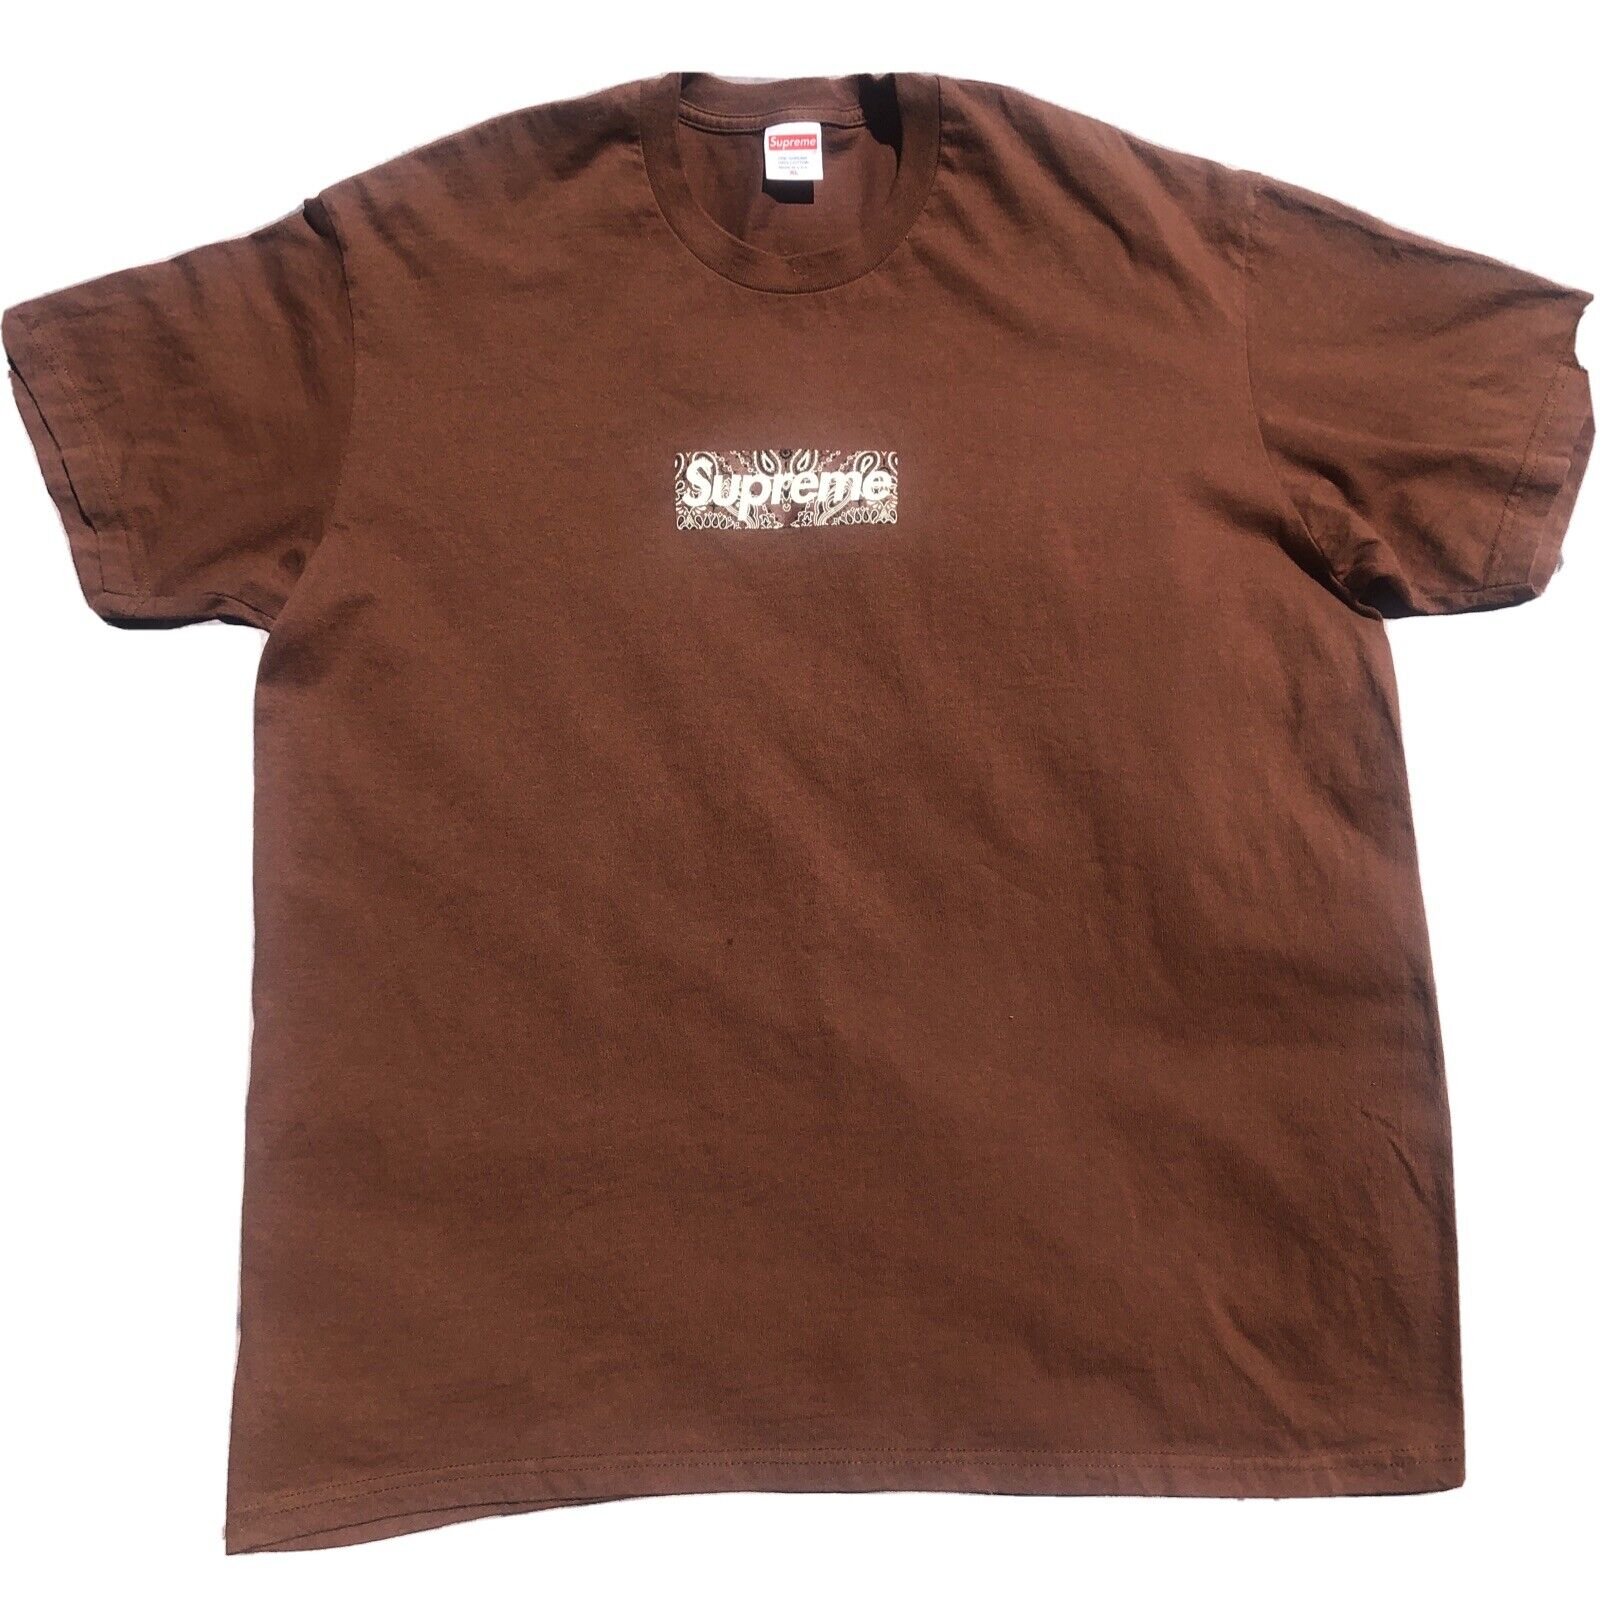 Supreme Bandana Box Logo Tee Brown - Size XL | eBay